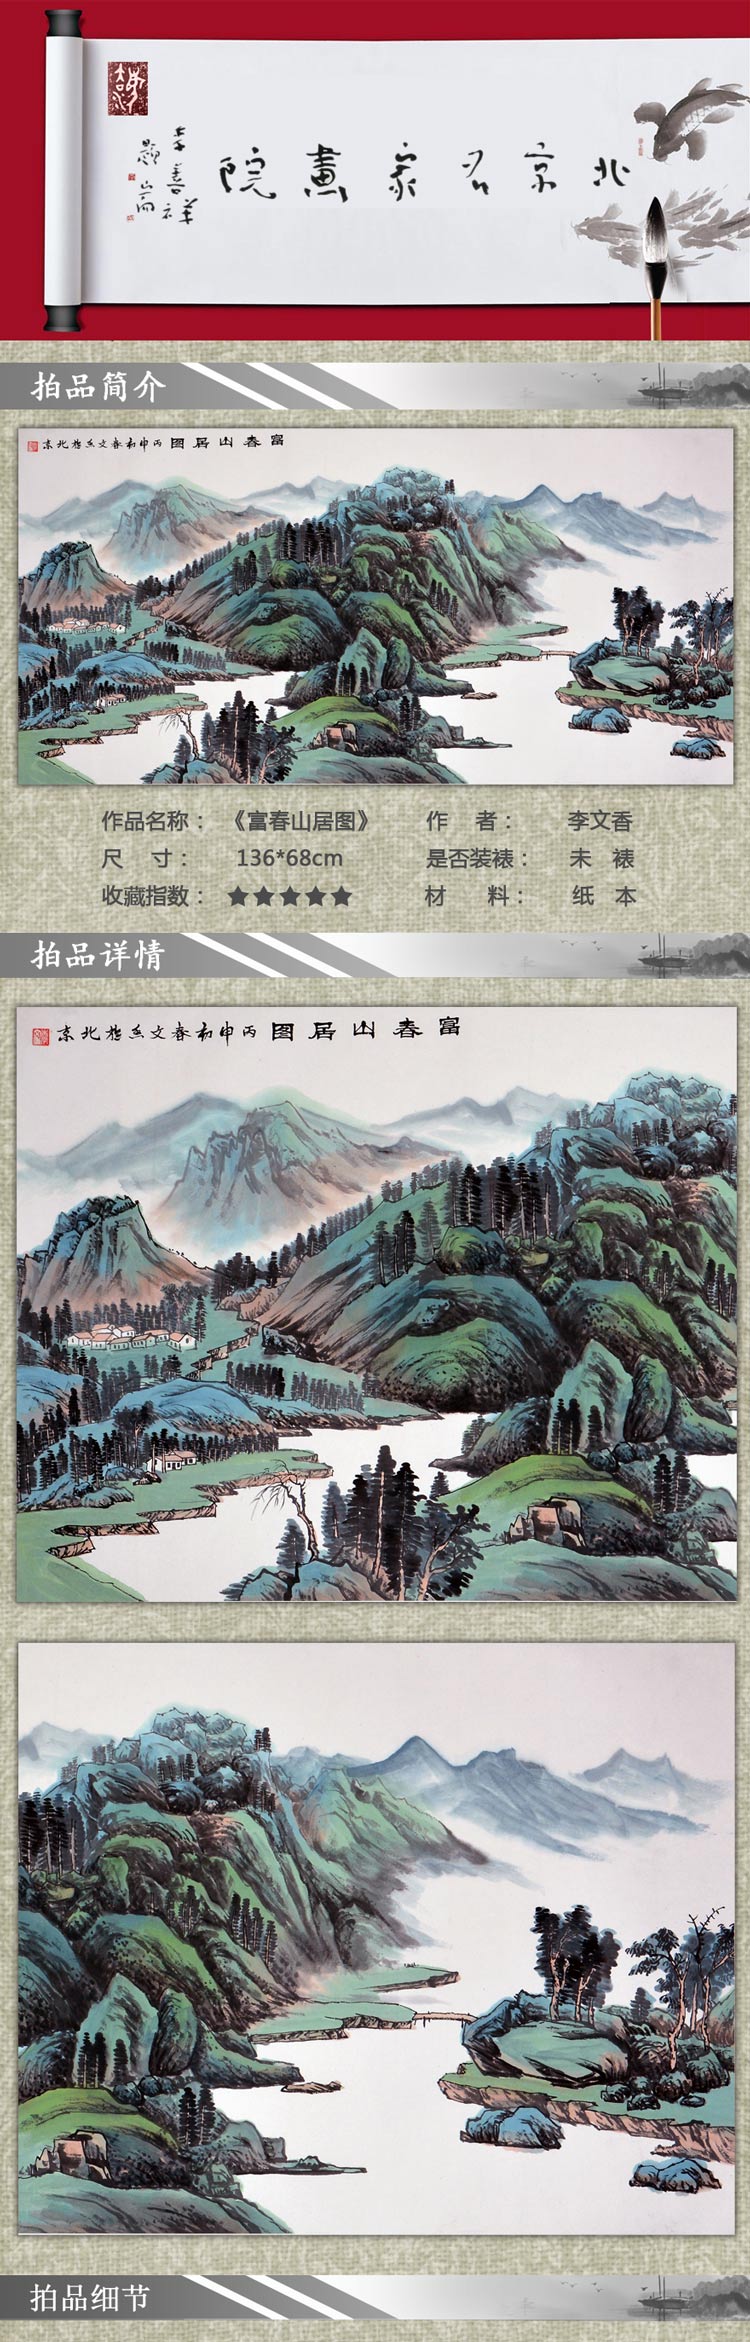 【mingjiahuayuan名家画院 传统水墨】李文香 《富春山居图》传统水墨